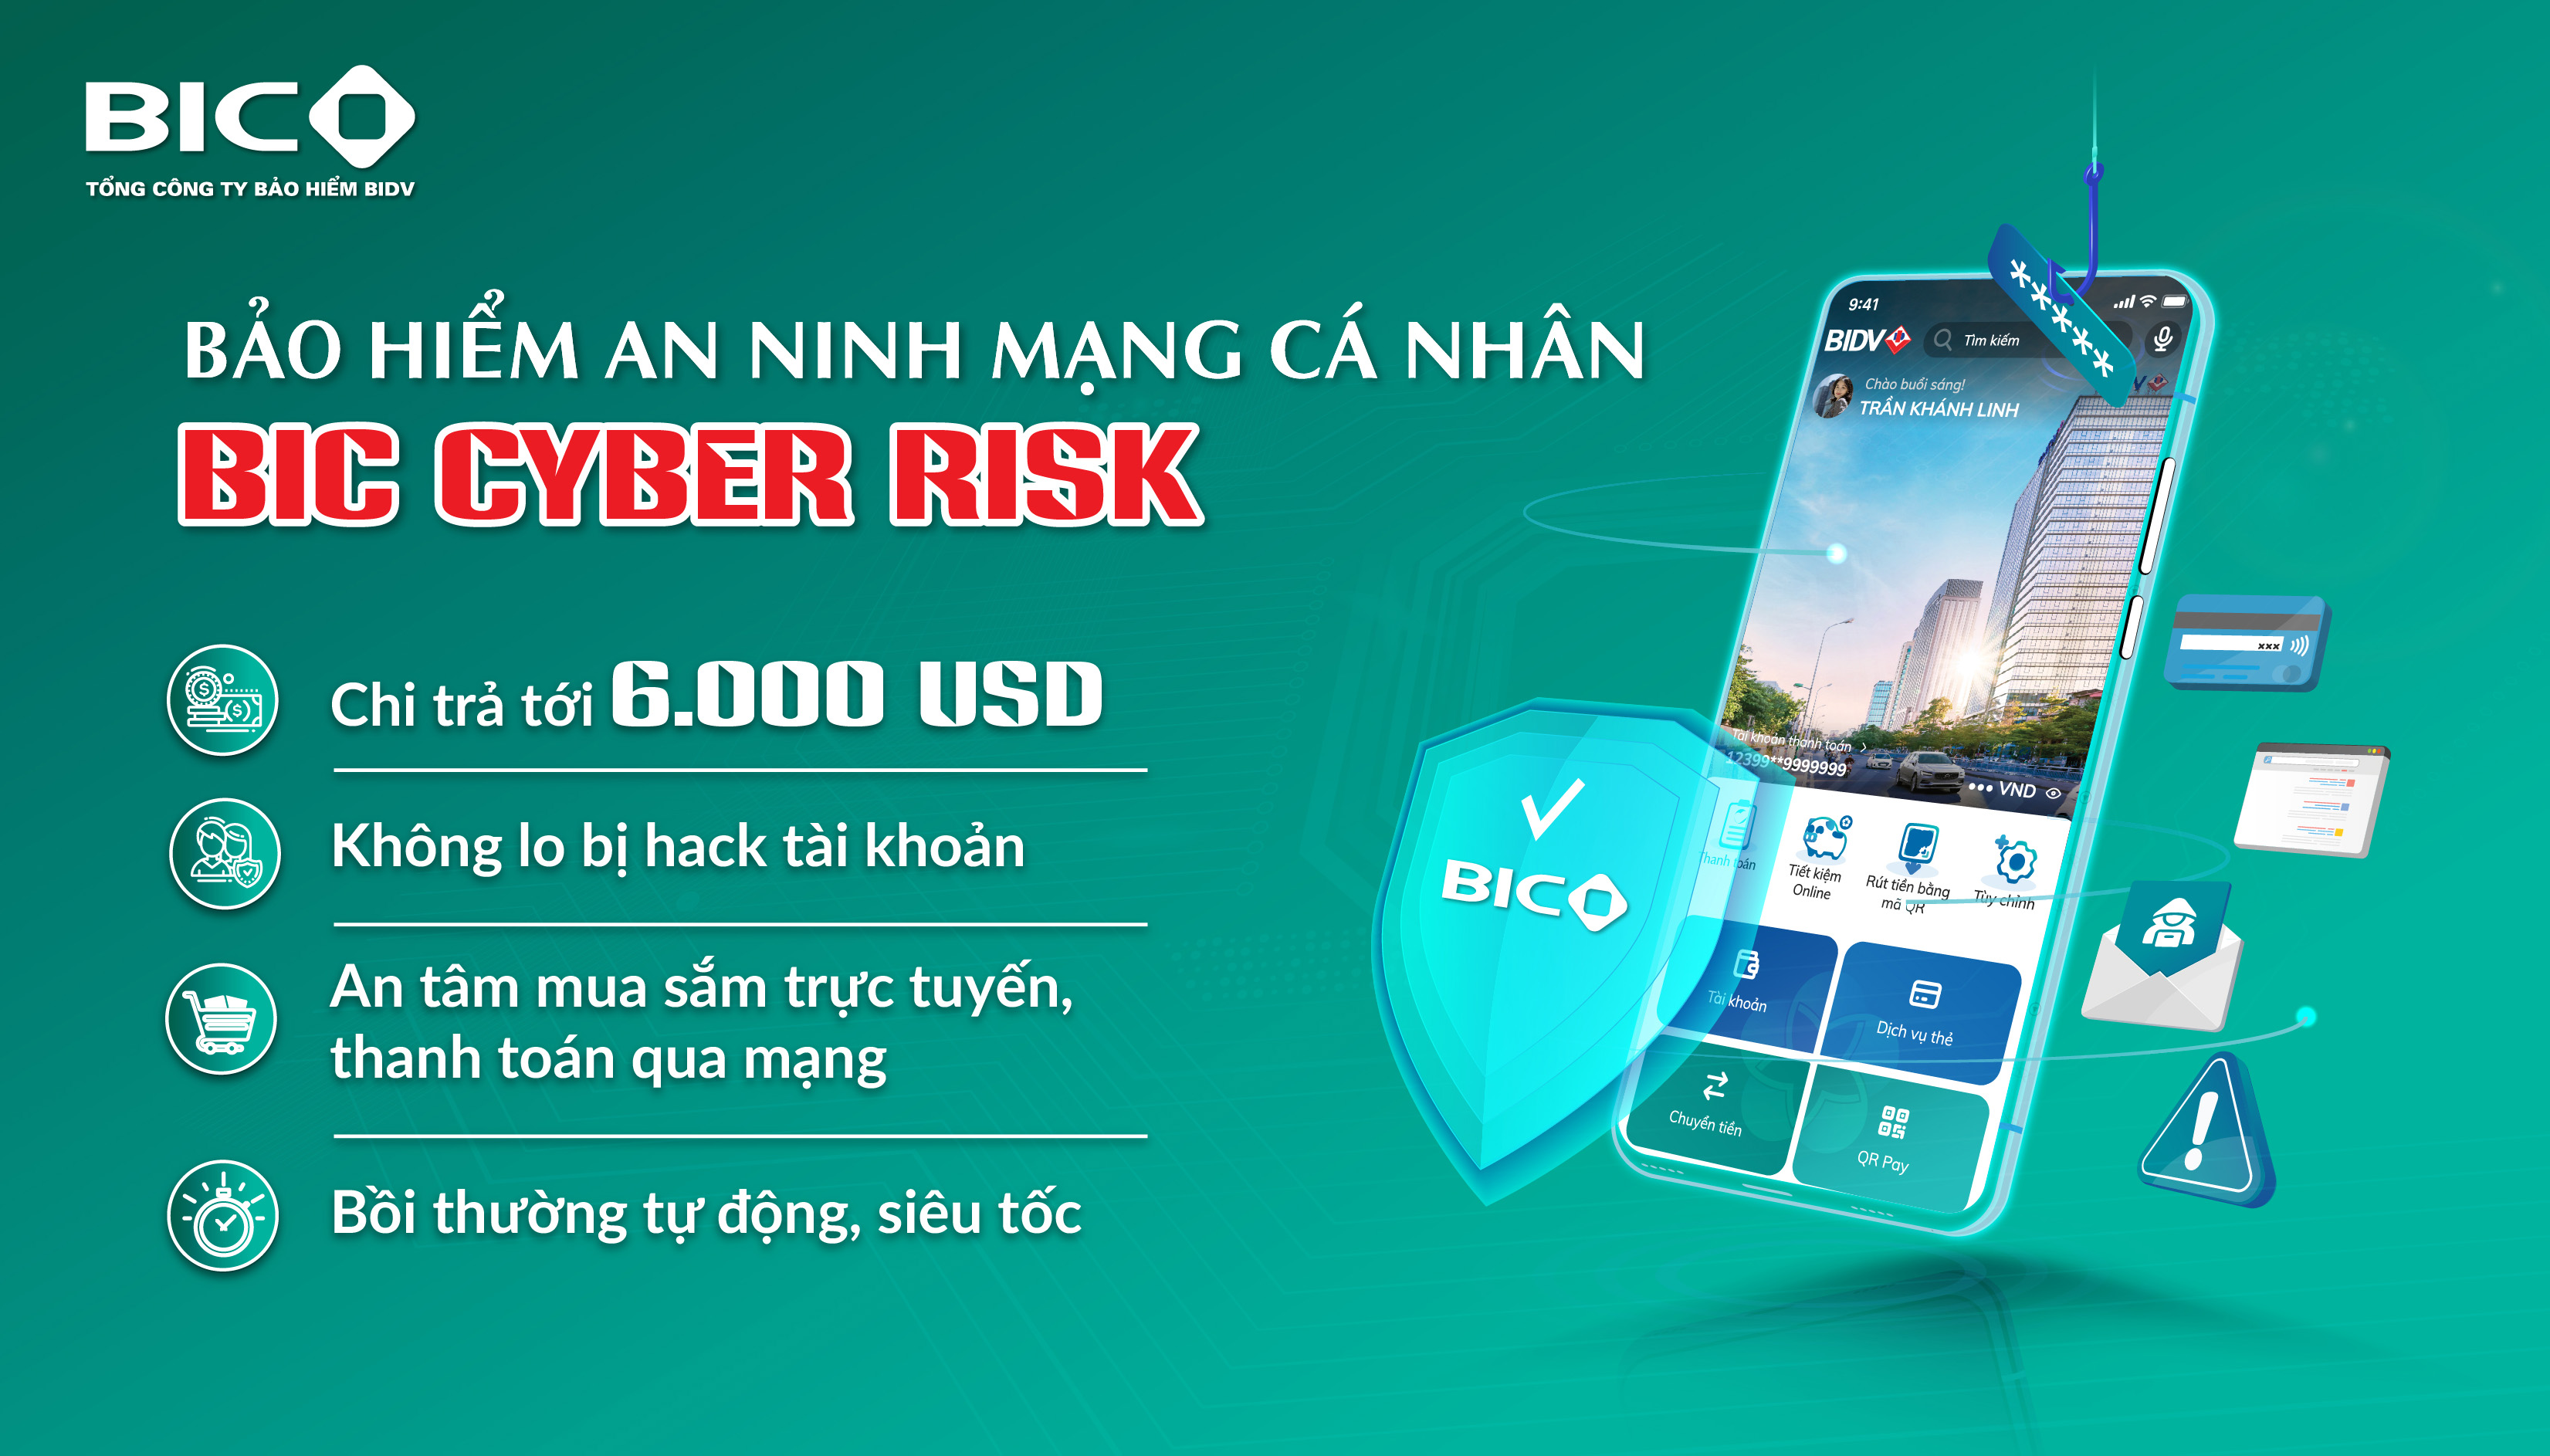 BIC ra mắt bảo hiểm an ninh mạng cá nhân BIC Cyber Risk